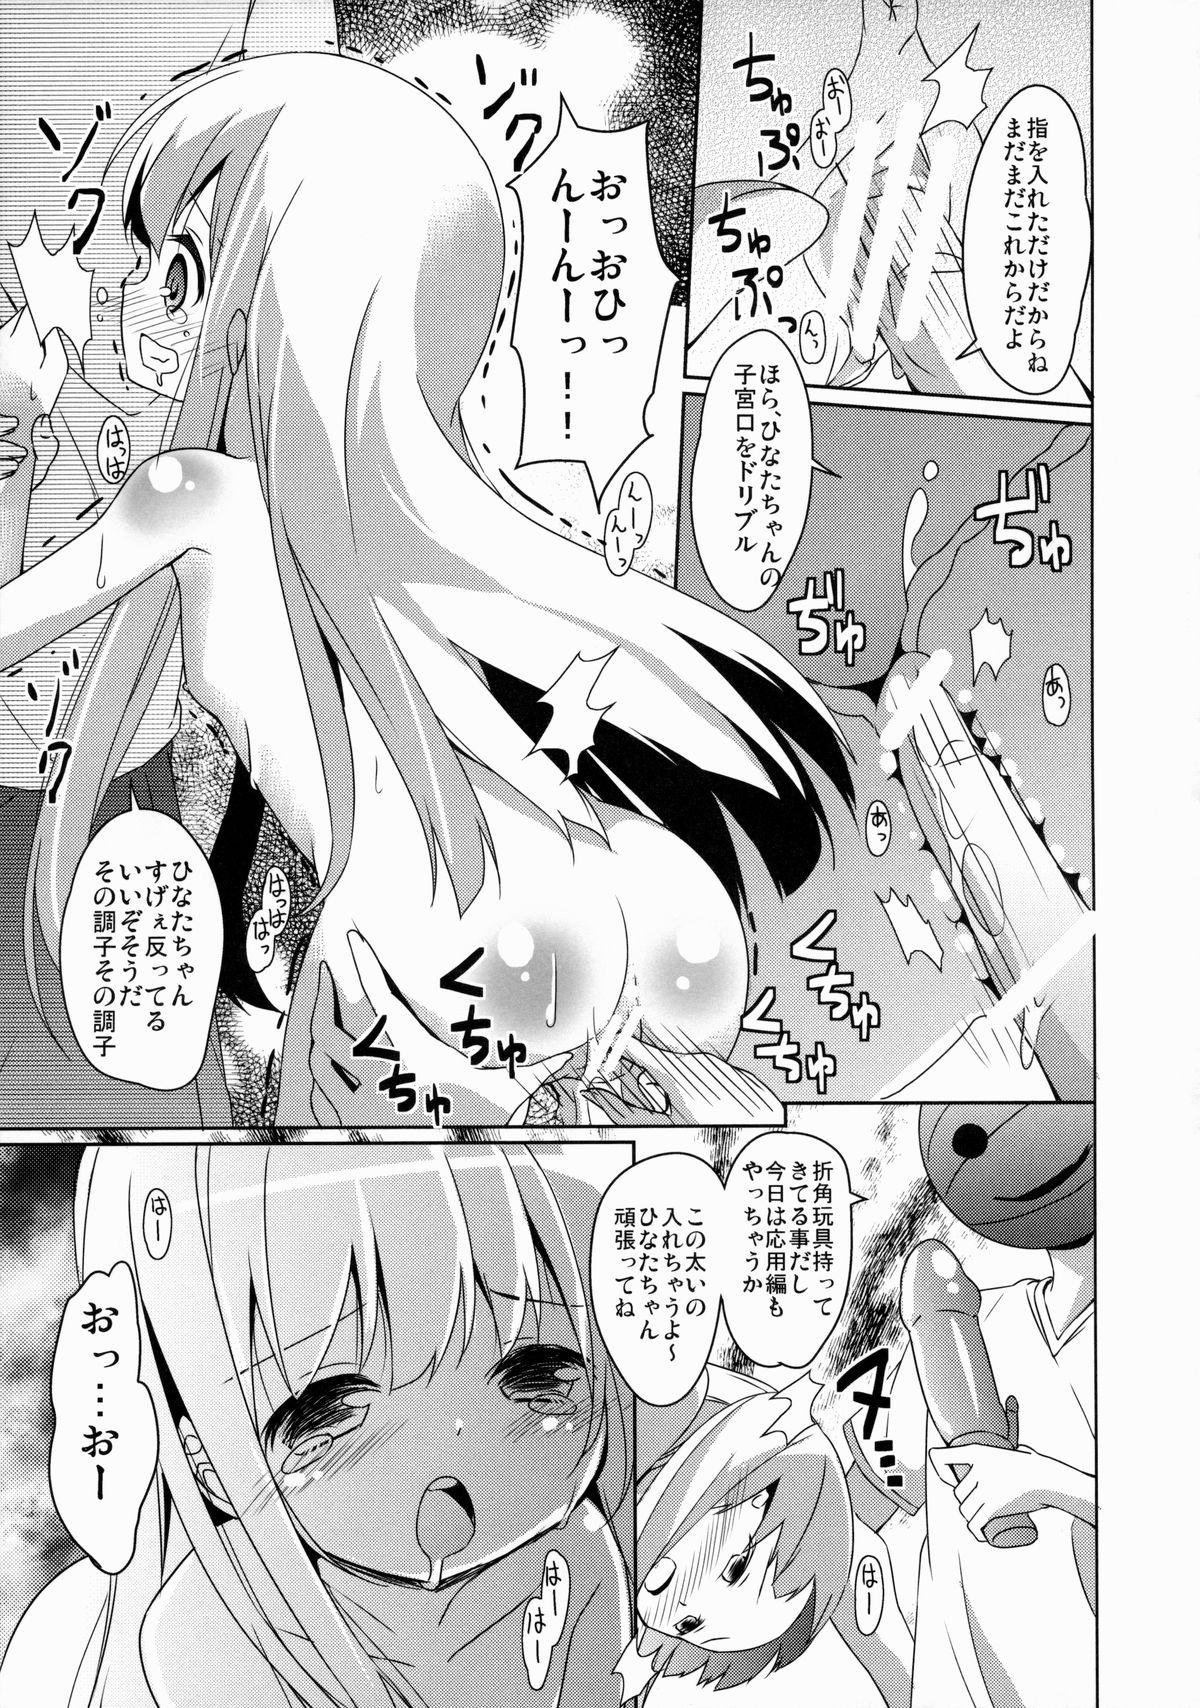 4some Himitsu no Level Up - Ro-kyu-bu Bubble - Page 8